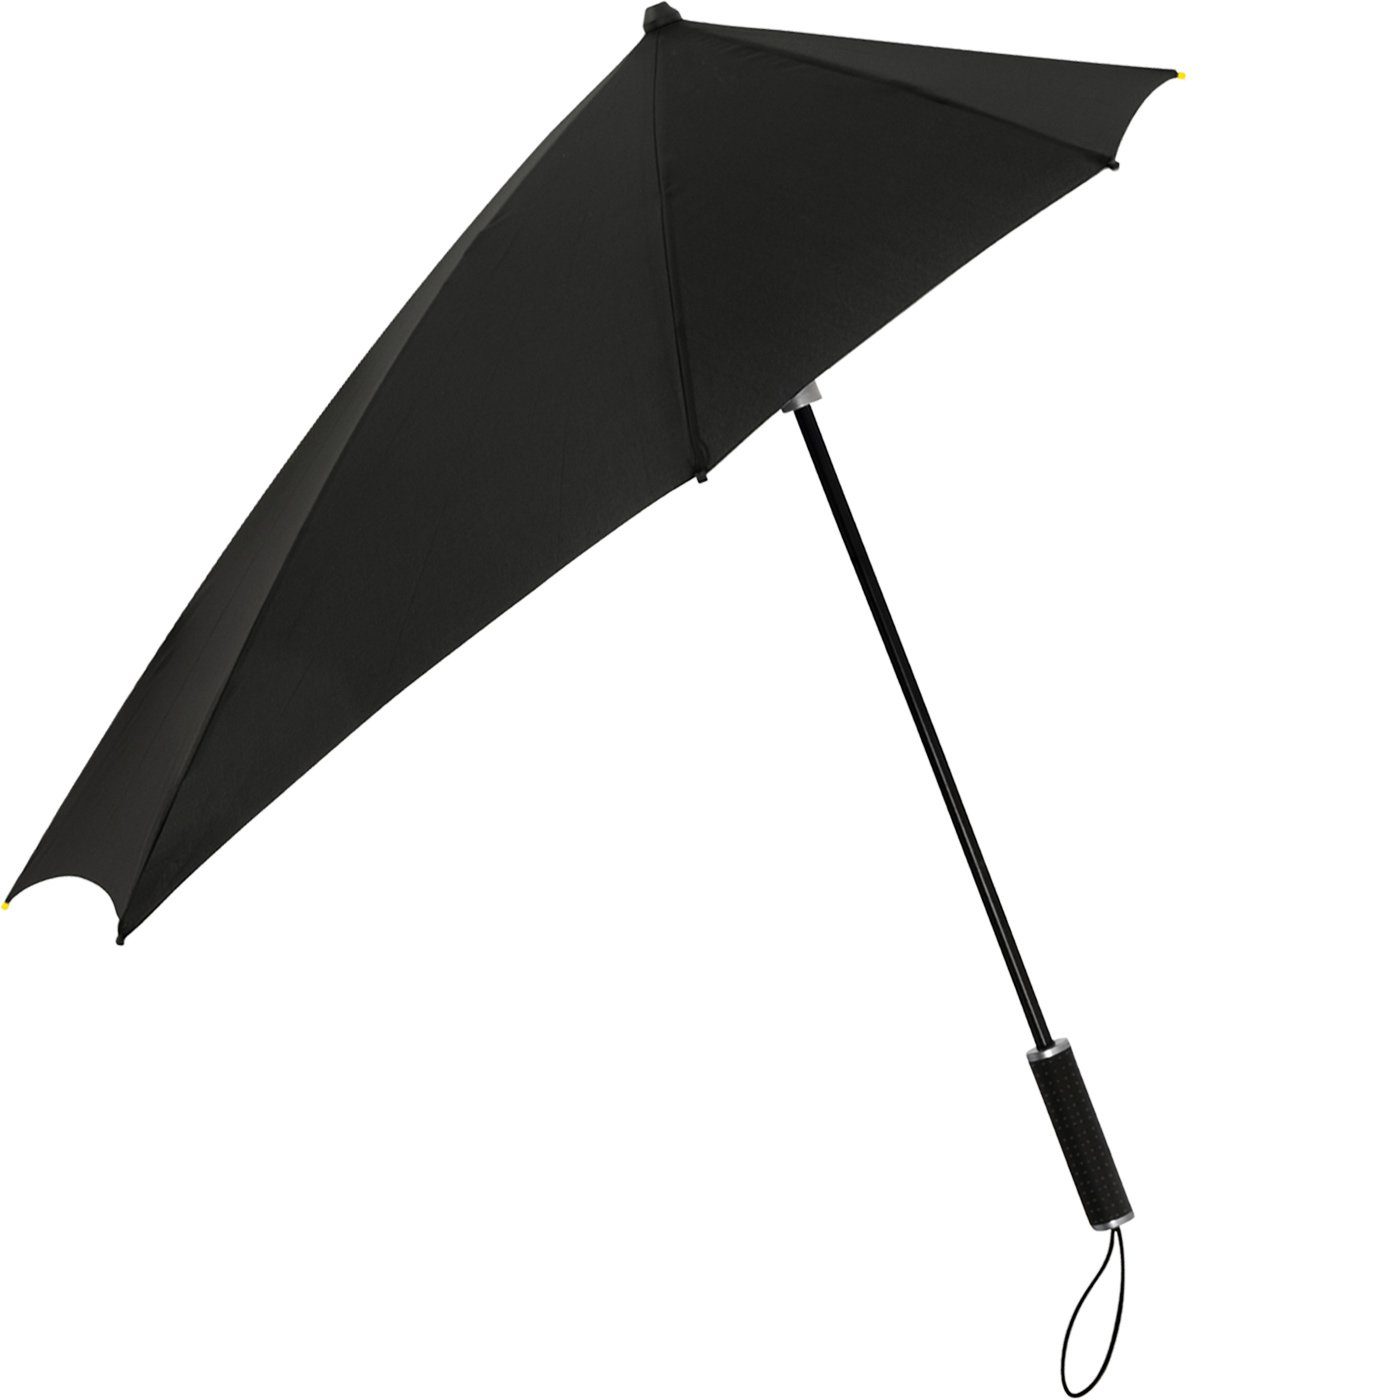 bis aerodynamischer zu in Regenschirm, Stockregenschirm km/h den hält Form besondere der STORMaxi aus Schirm schwarz durch Impliva Wind, Sturmschirm sich seine 100 dreht